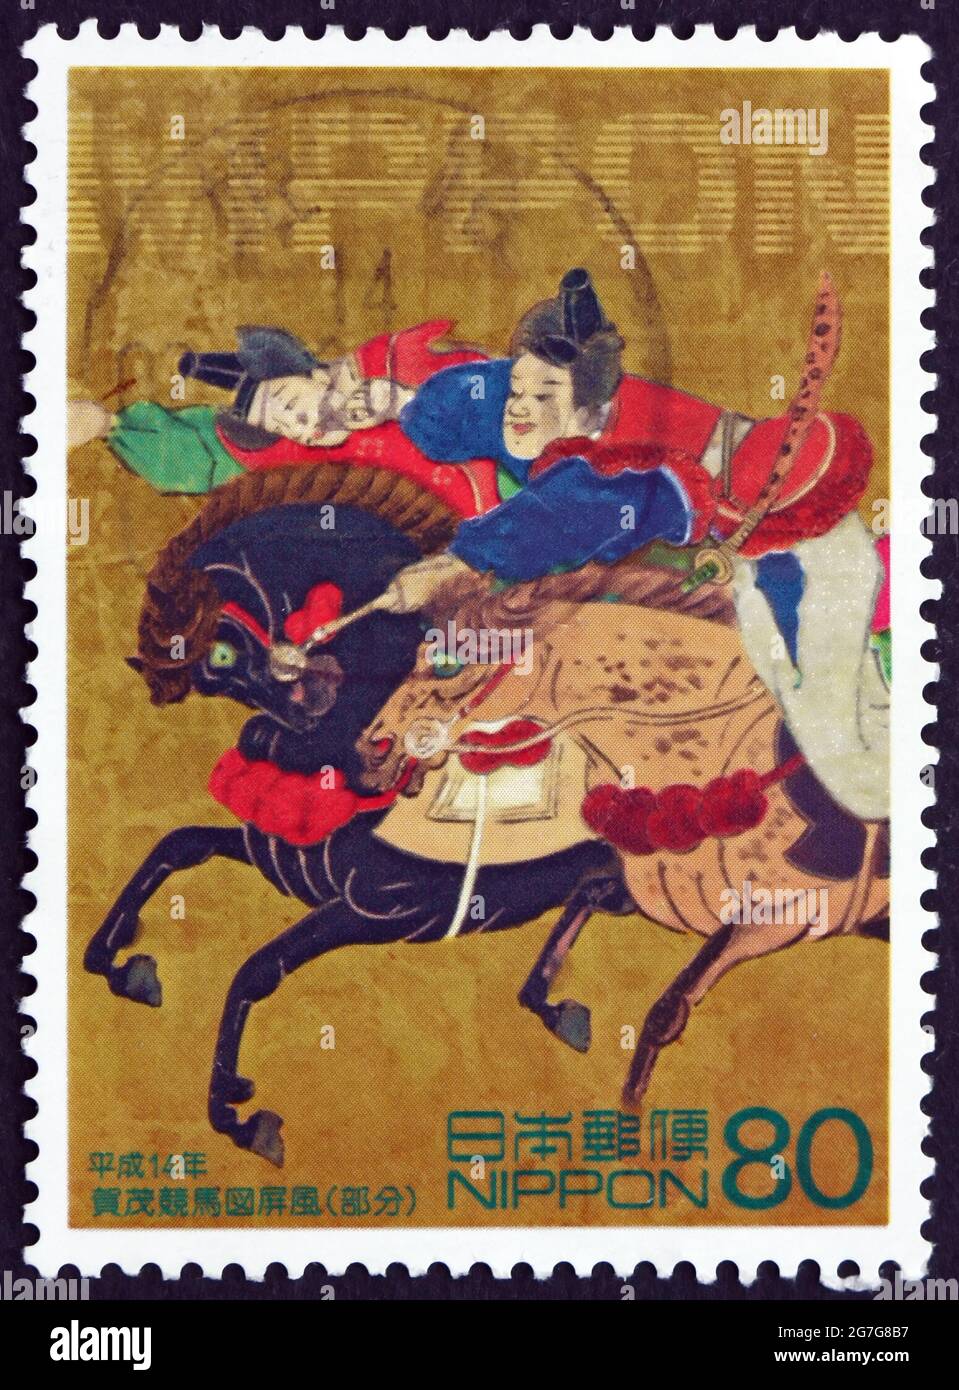 JAPAN - UM 2002: Eine in Japan gedruckte Briefmarke zeigt eine klappbare Siebtafel, die die Pferderennen-Szene darstellt, Philatelie Week, um 2002 Stockfoto